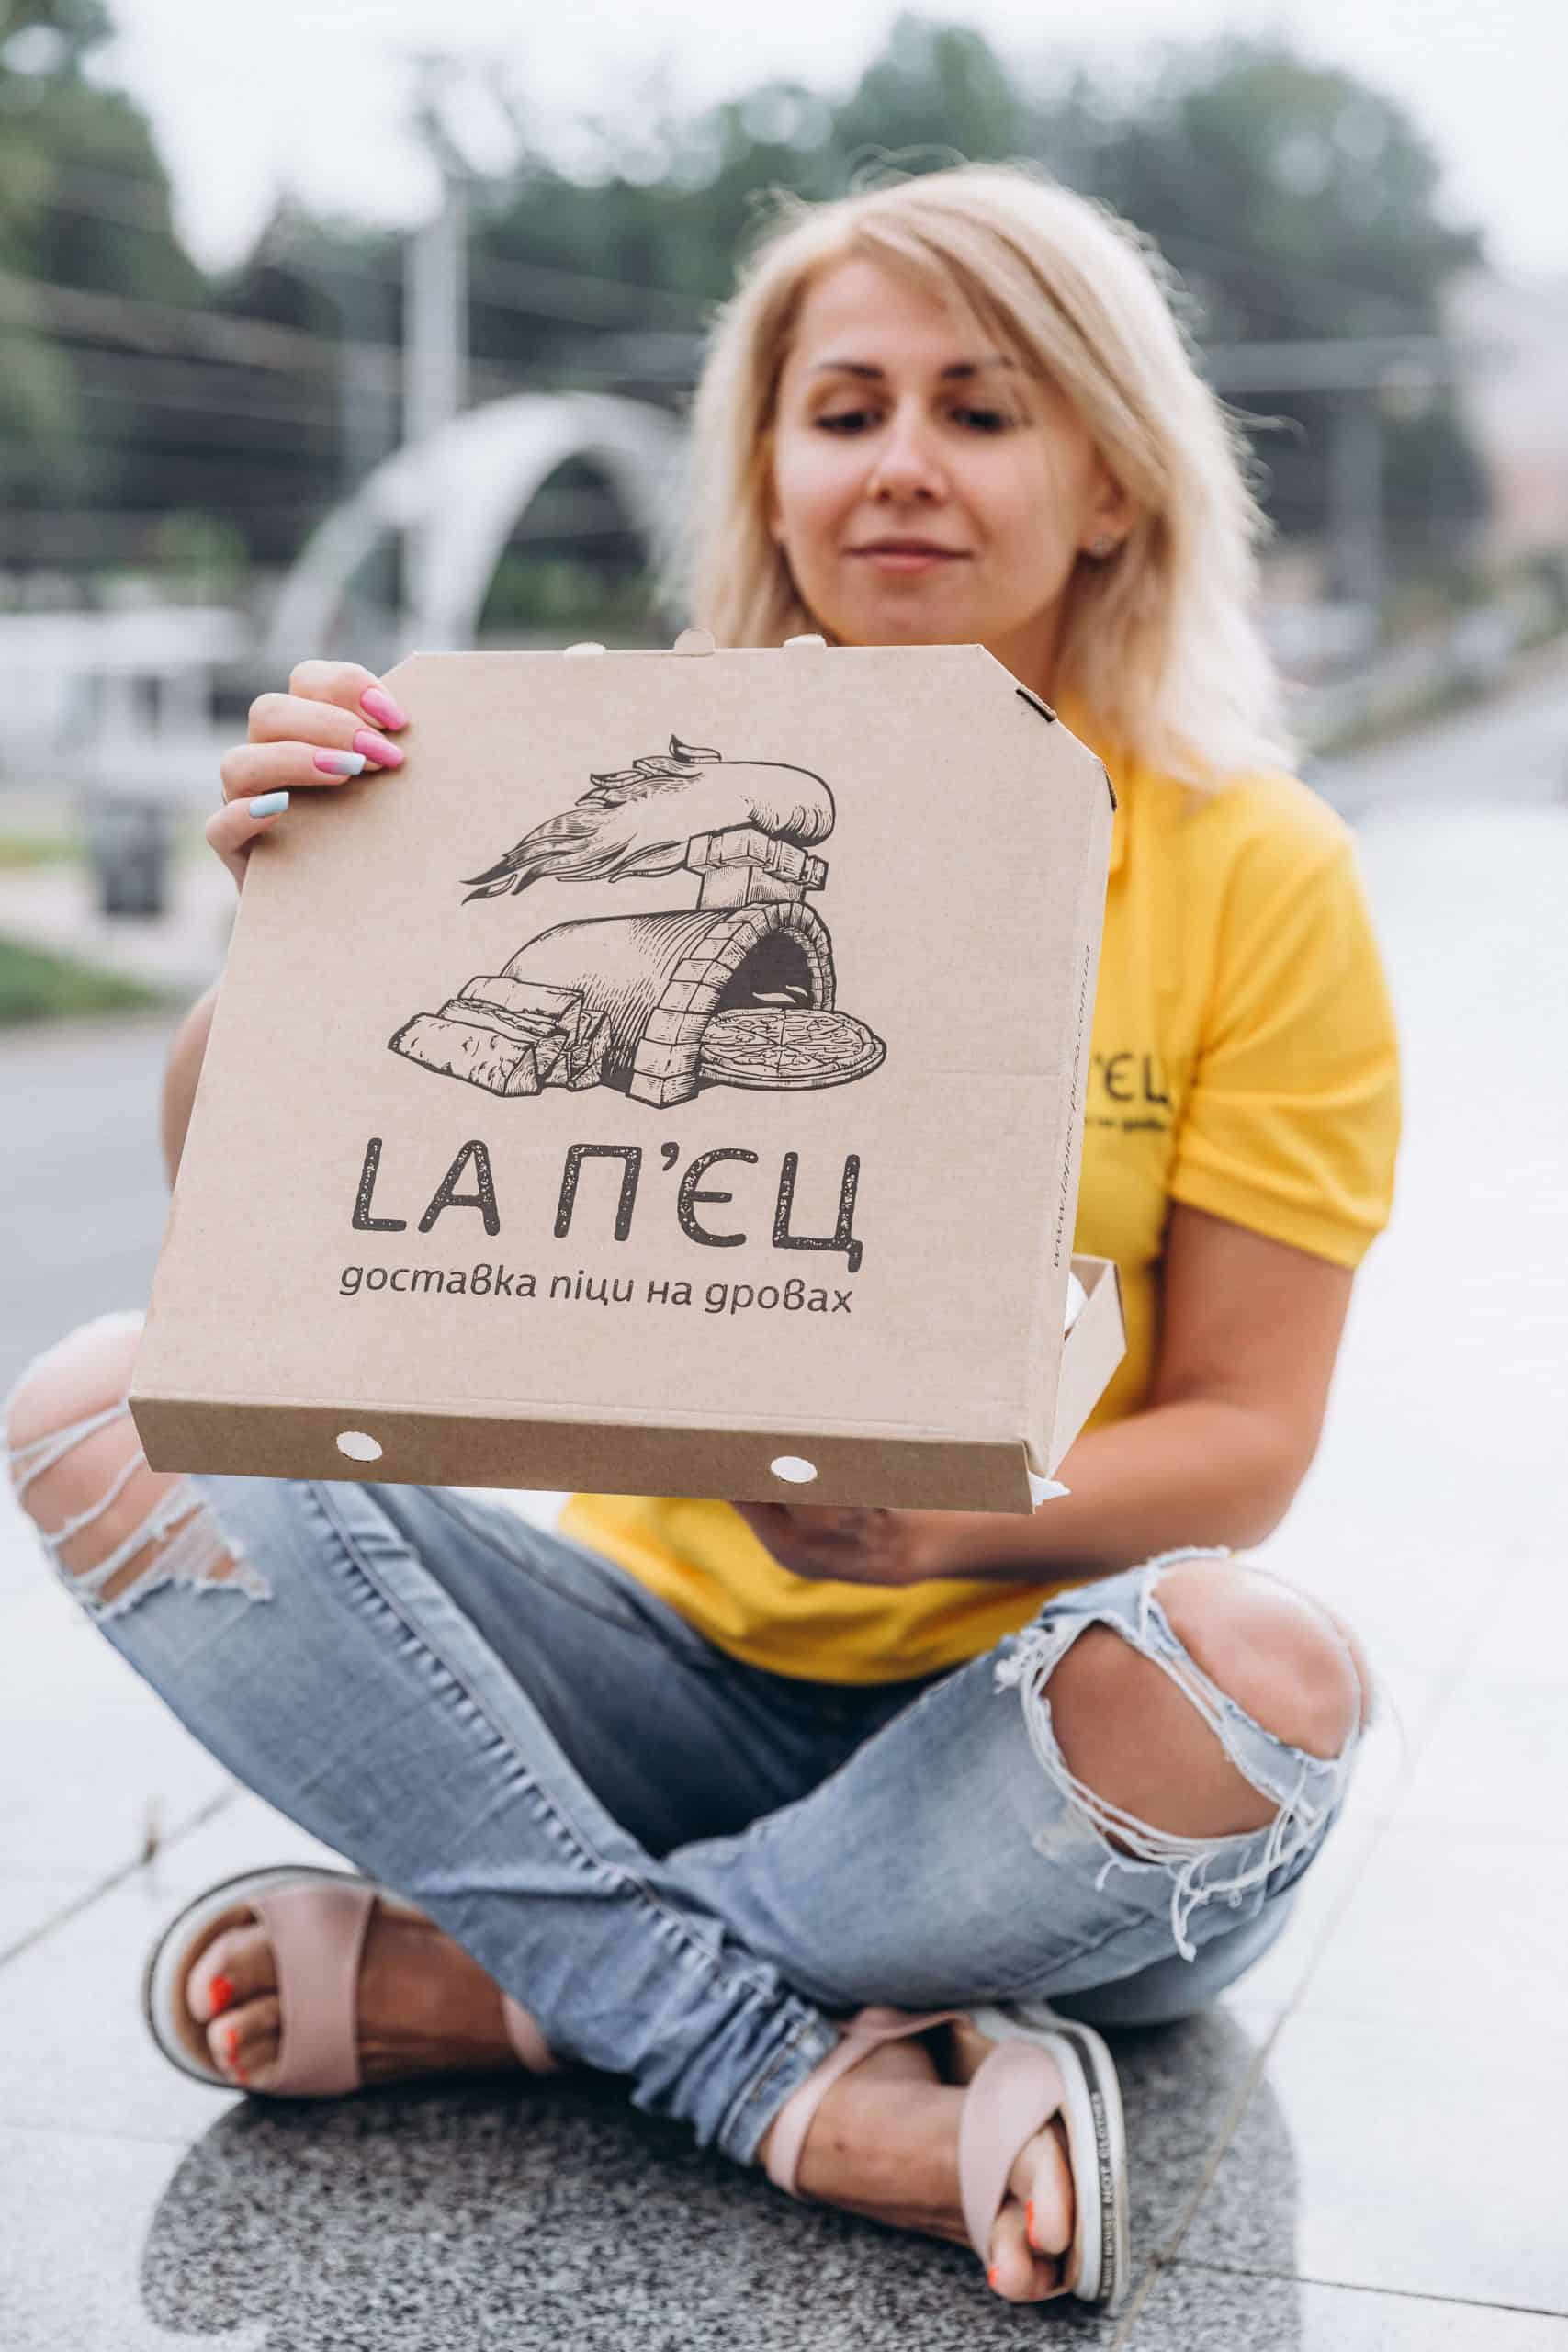 Знай наших — Адміністратор Наталя | LA П’ЄЦ доставка піци на дровах